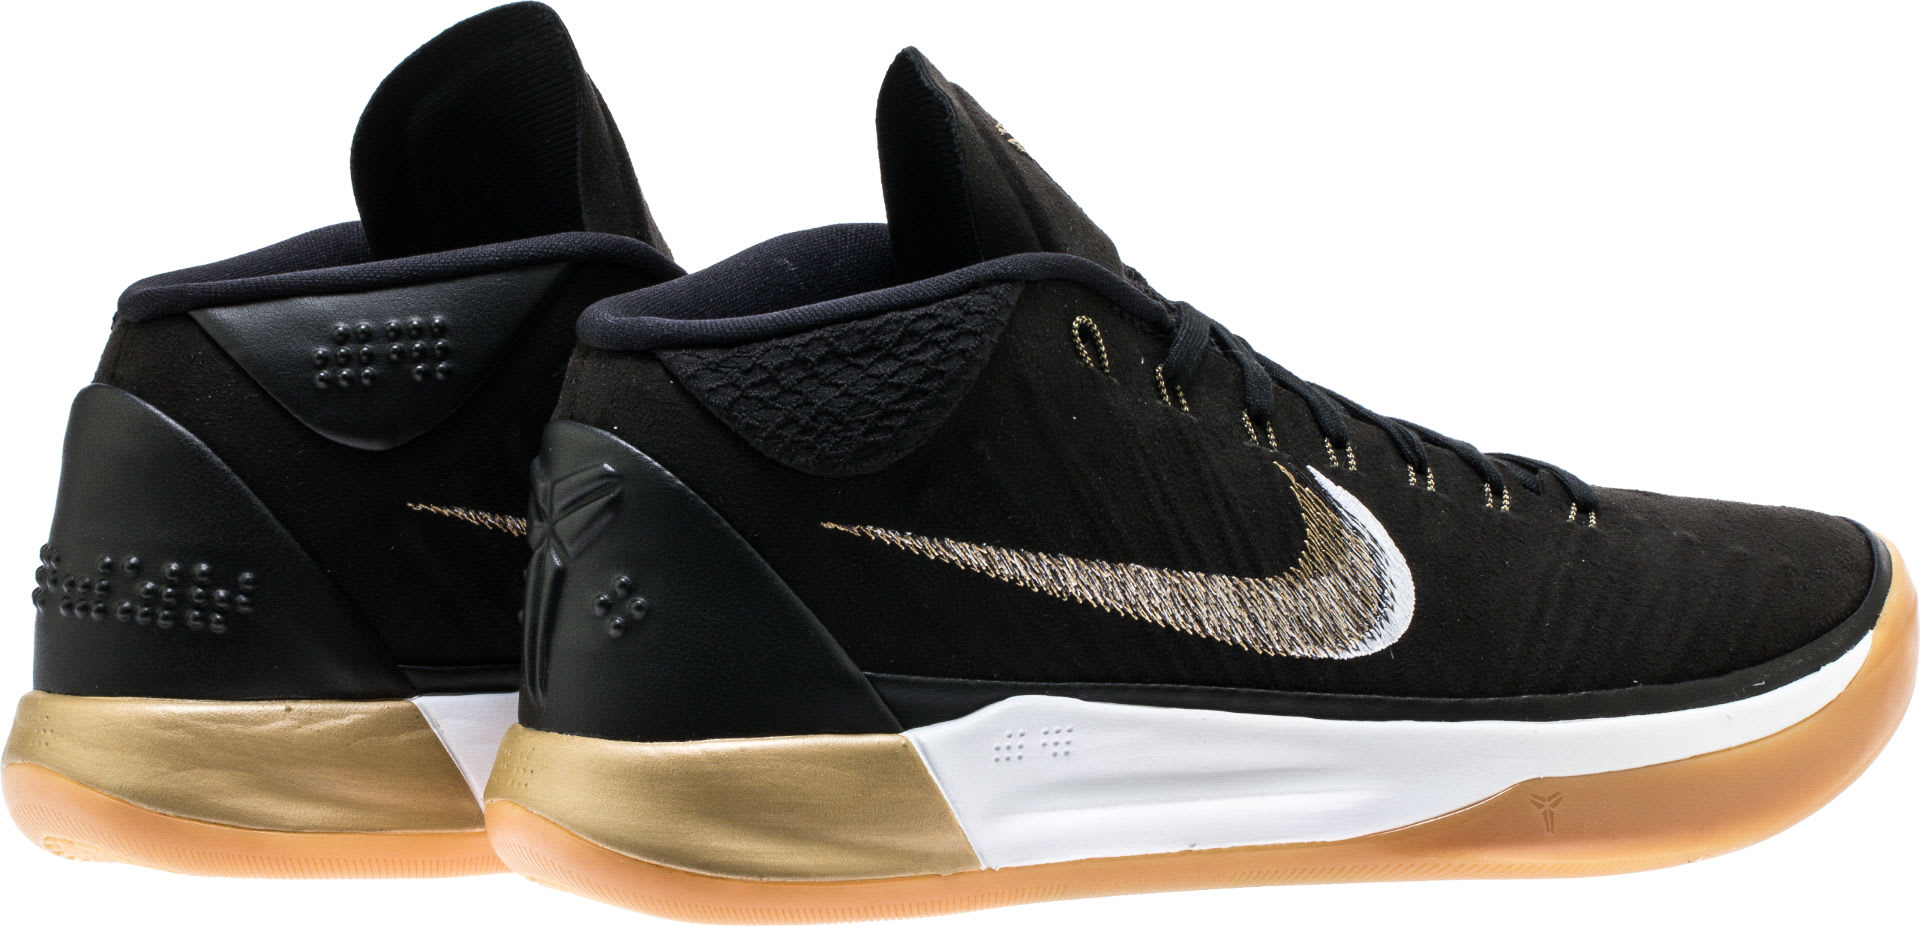 Nike Kobe A.D. Mid Black/Gold Release Date 922482-009 Heel